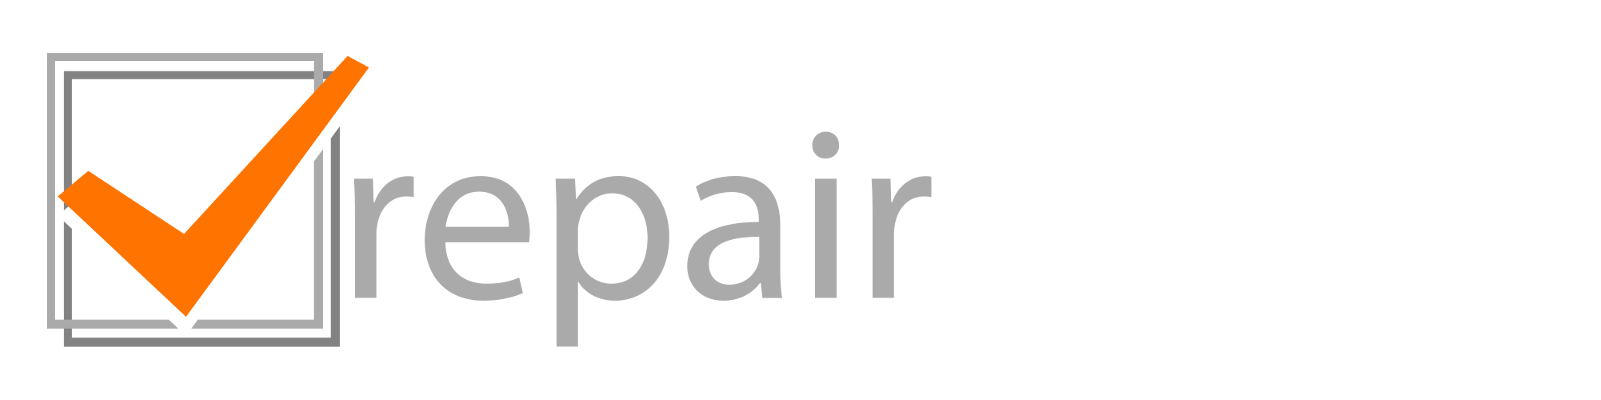 Repairhouse logo